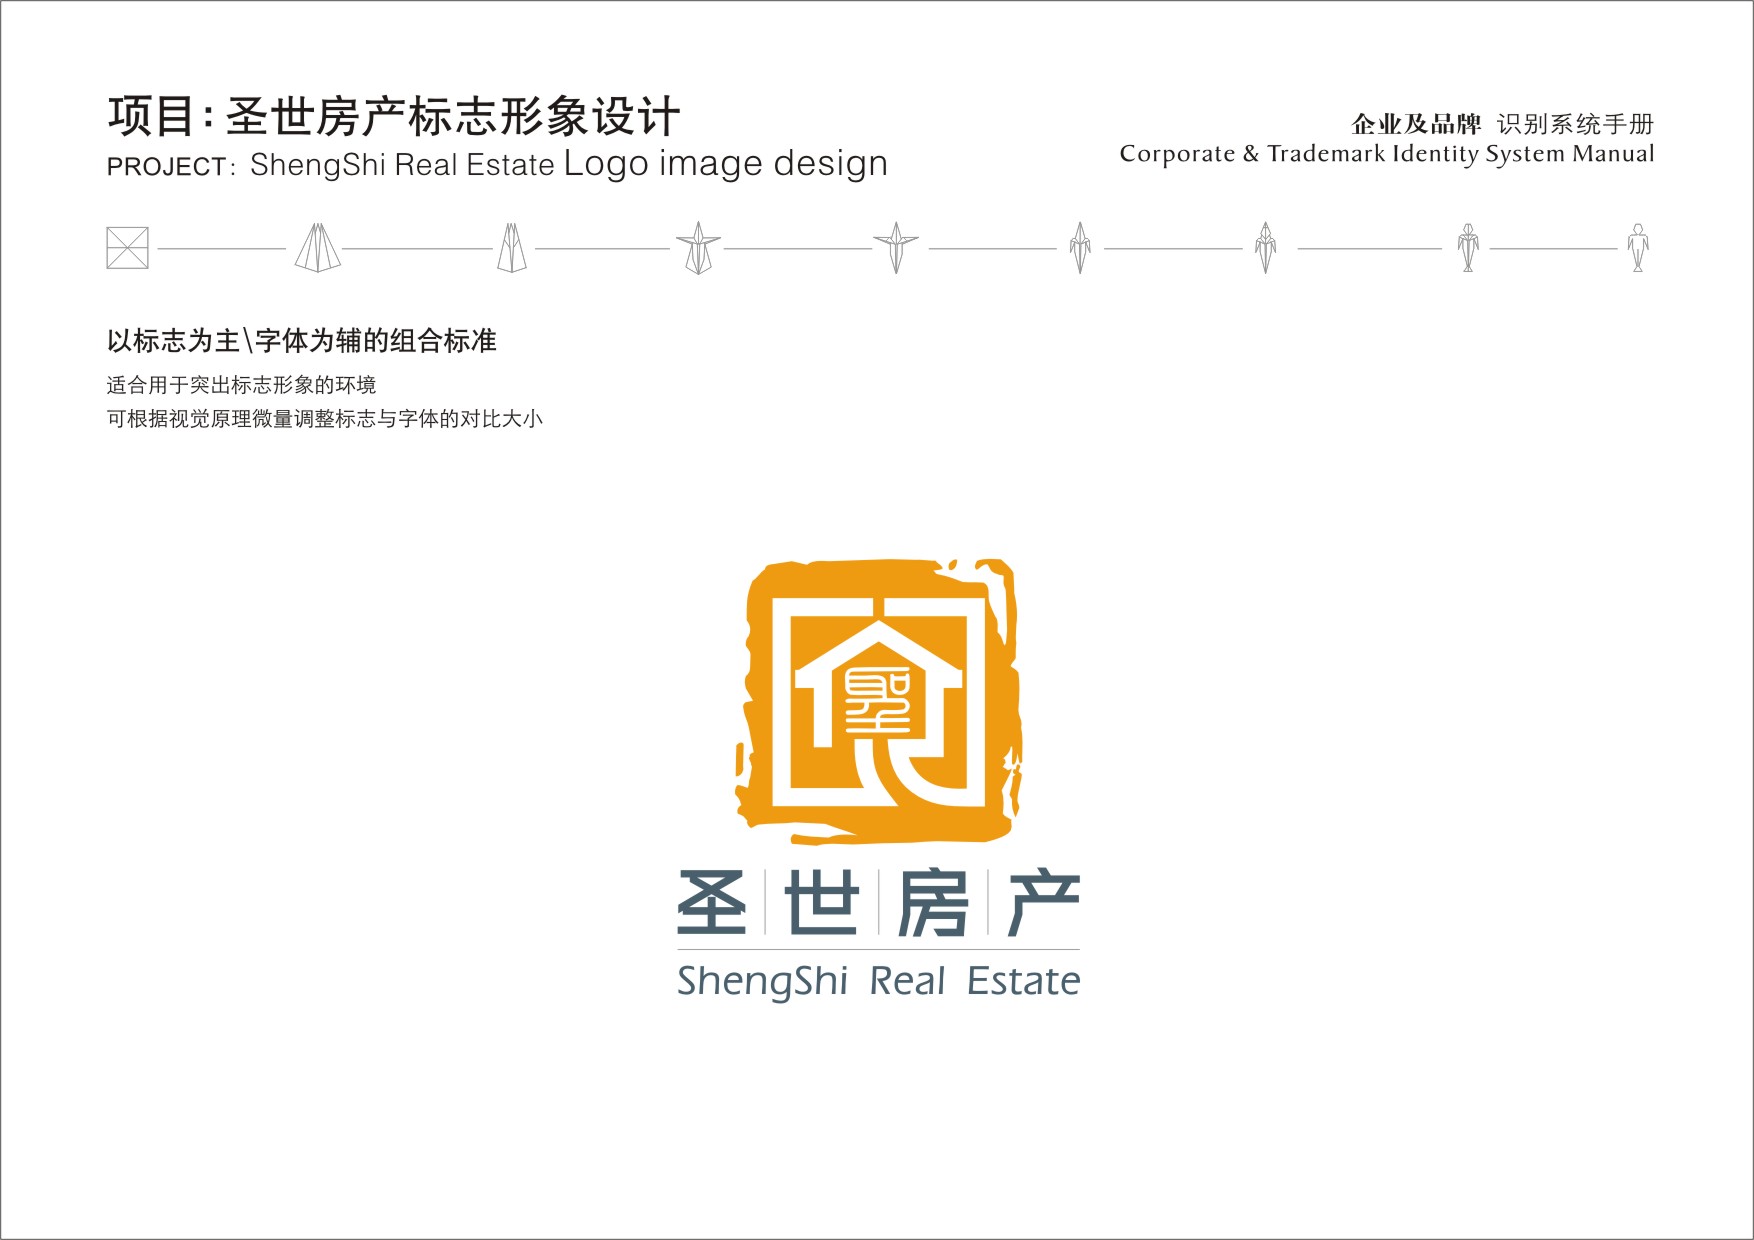 天津塘沽logo设计制作 公司logo设计